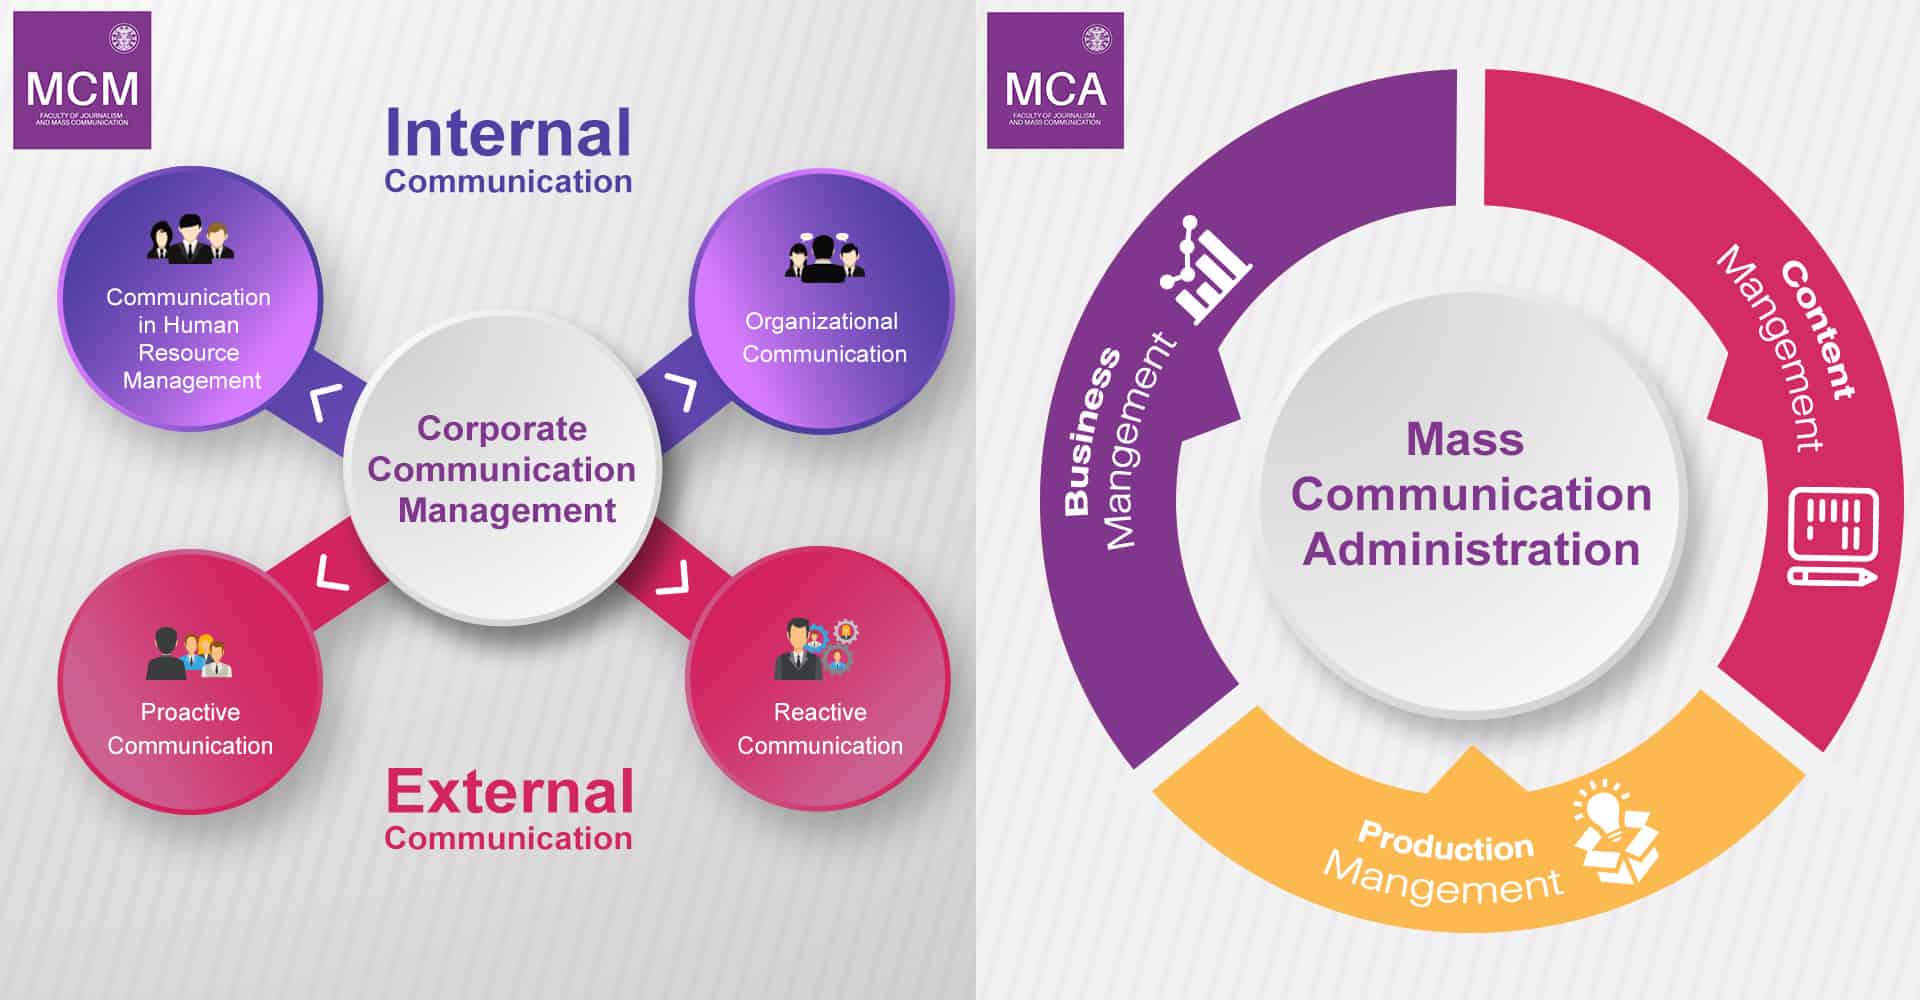 อัพเดทความรู้ในยุค 5.0 กับหลักสูตรระดับปริญญาโทด้านการสื่อสาร MCM & MCA คณะวารสารศาสตร์ฯ มหาวิทยาลัยธรรมศาสตร์